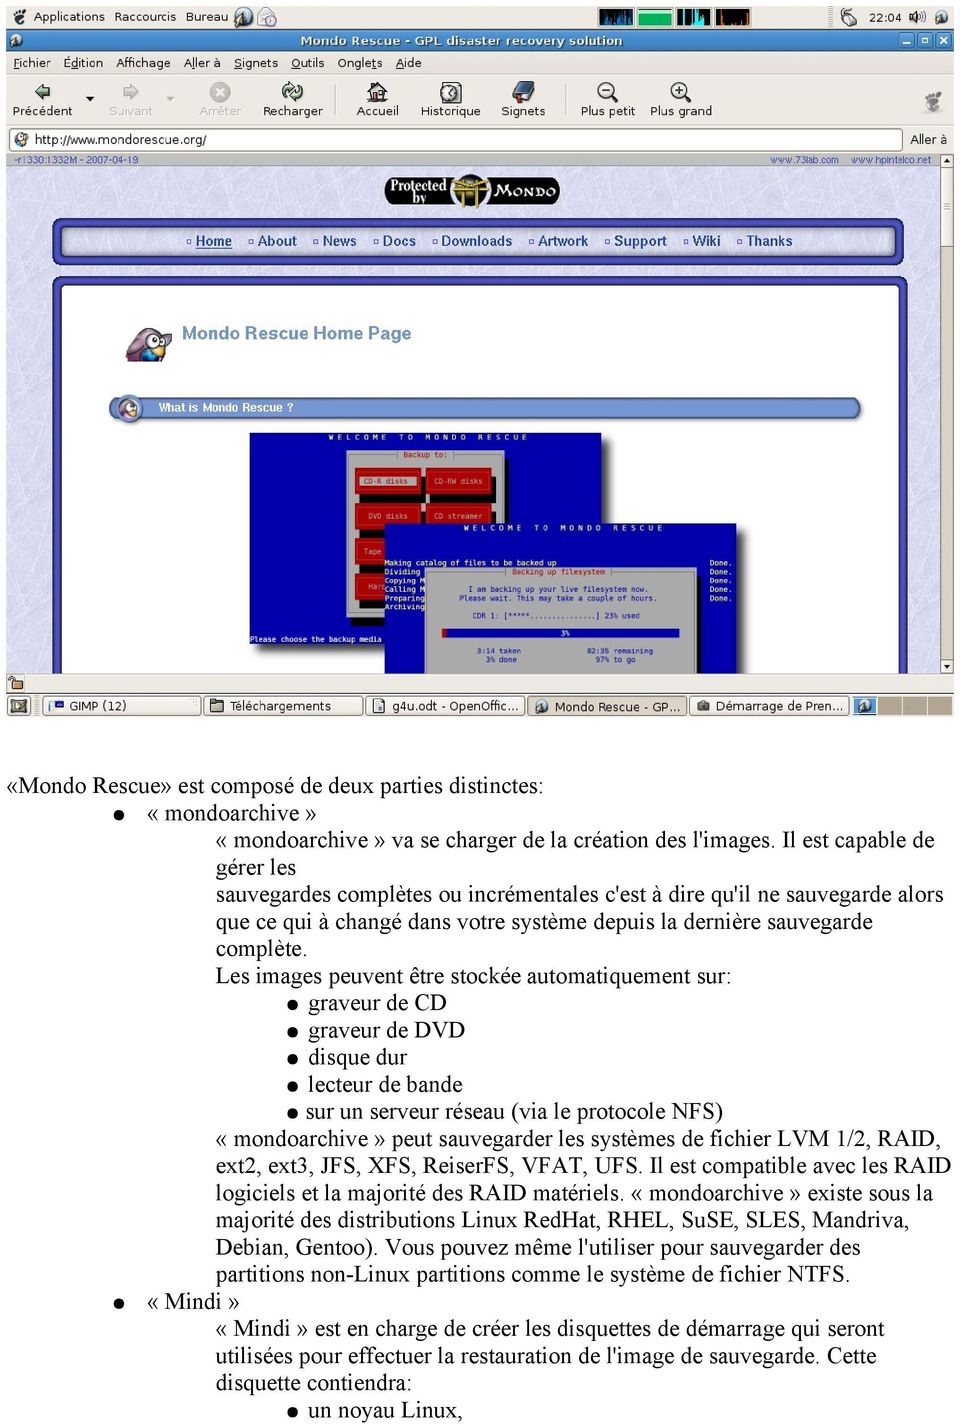 Les images peuvent être stockée automatiquement sur: graveur de CD graveur de DVD disque dur lecteur de bande sur un serveur réseau (via le protocole NFS) «mondoarchive» peut sauvegarder les systèmes